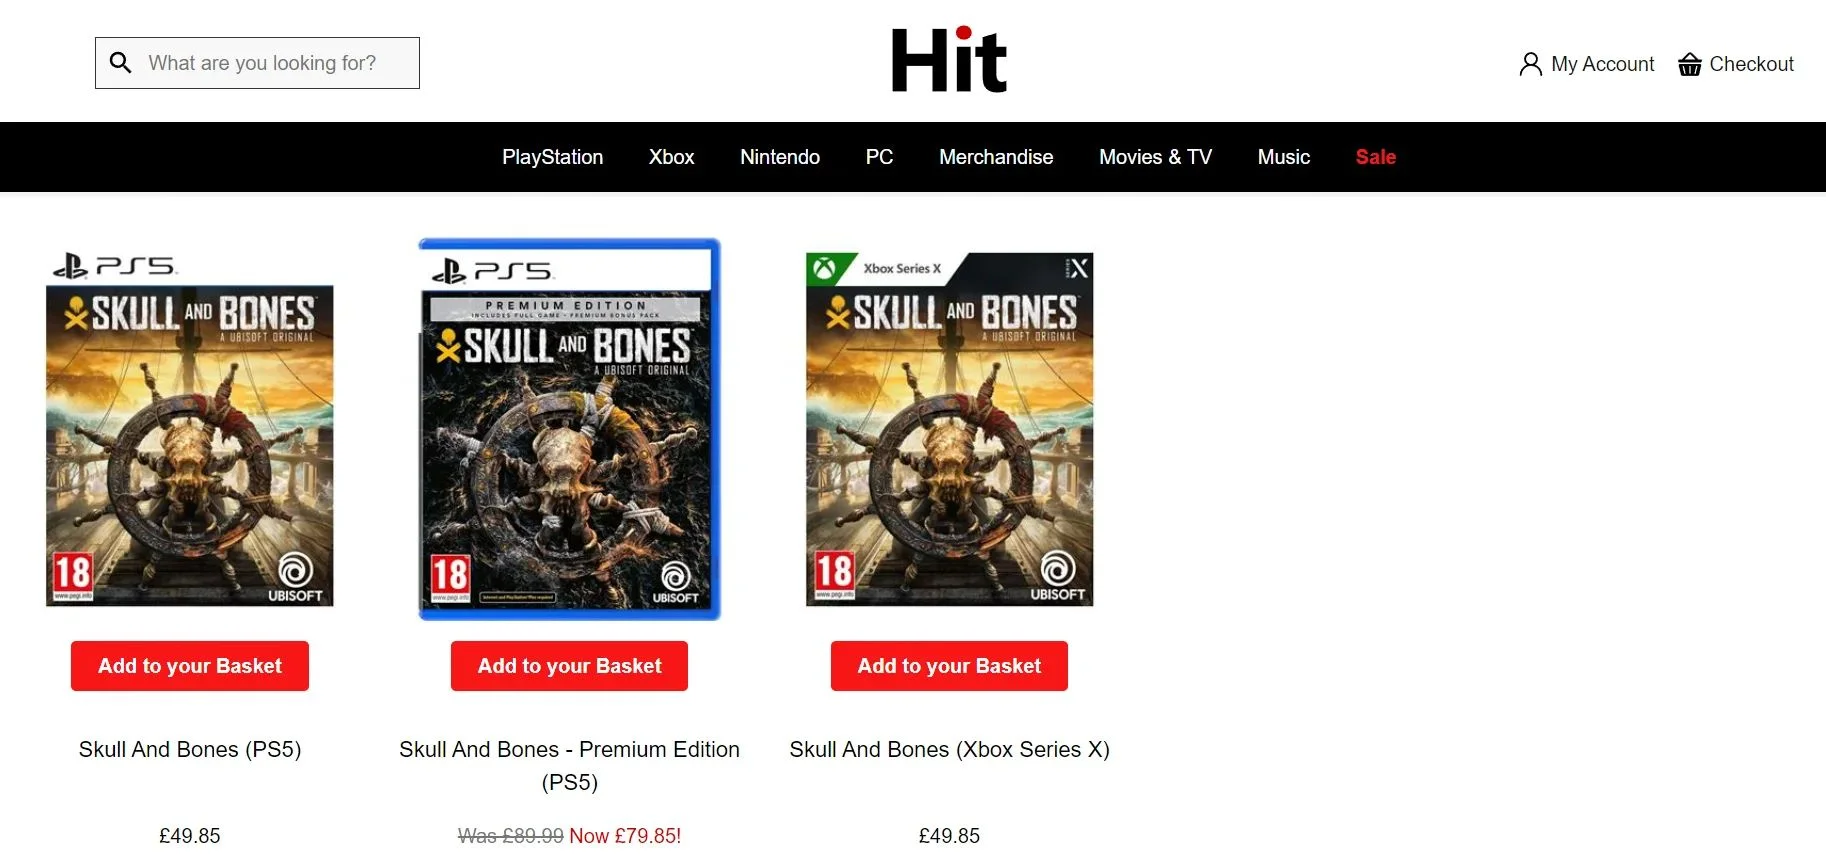 Skull and Bones начали продавать со значительной скидкой в некоторых магазинах - фото 1